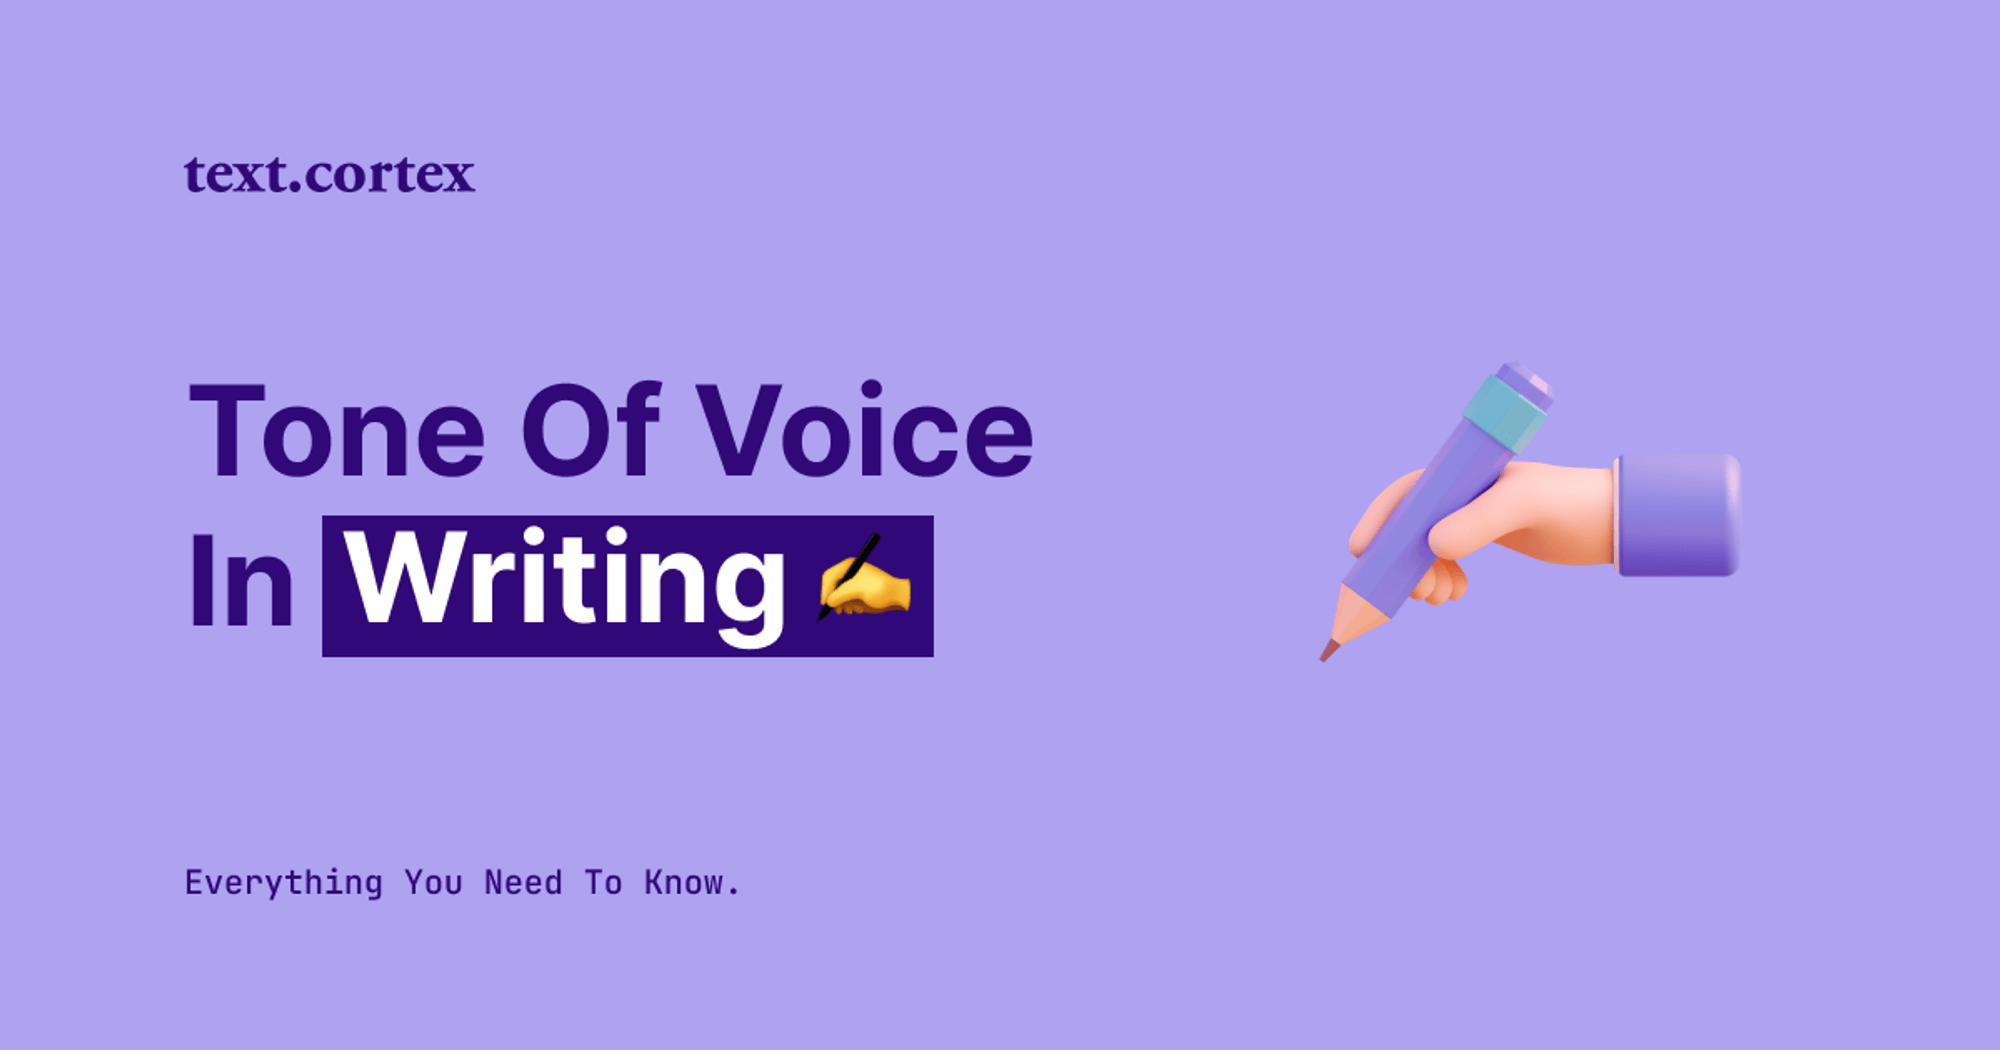 El tono de voz en la escritura - Todo lo que necesitas saber